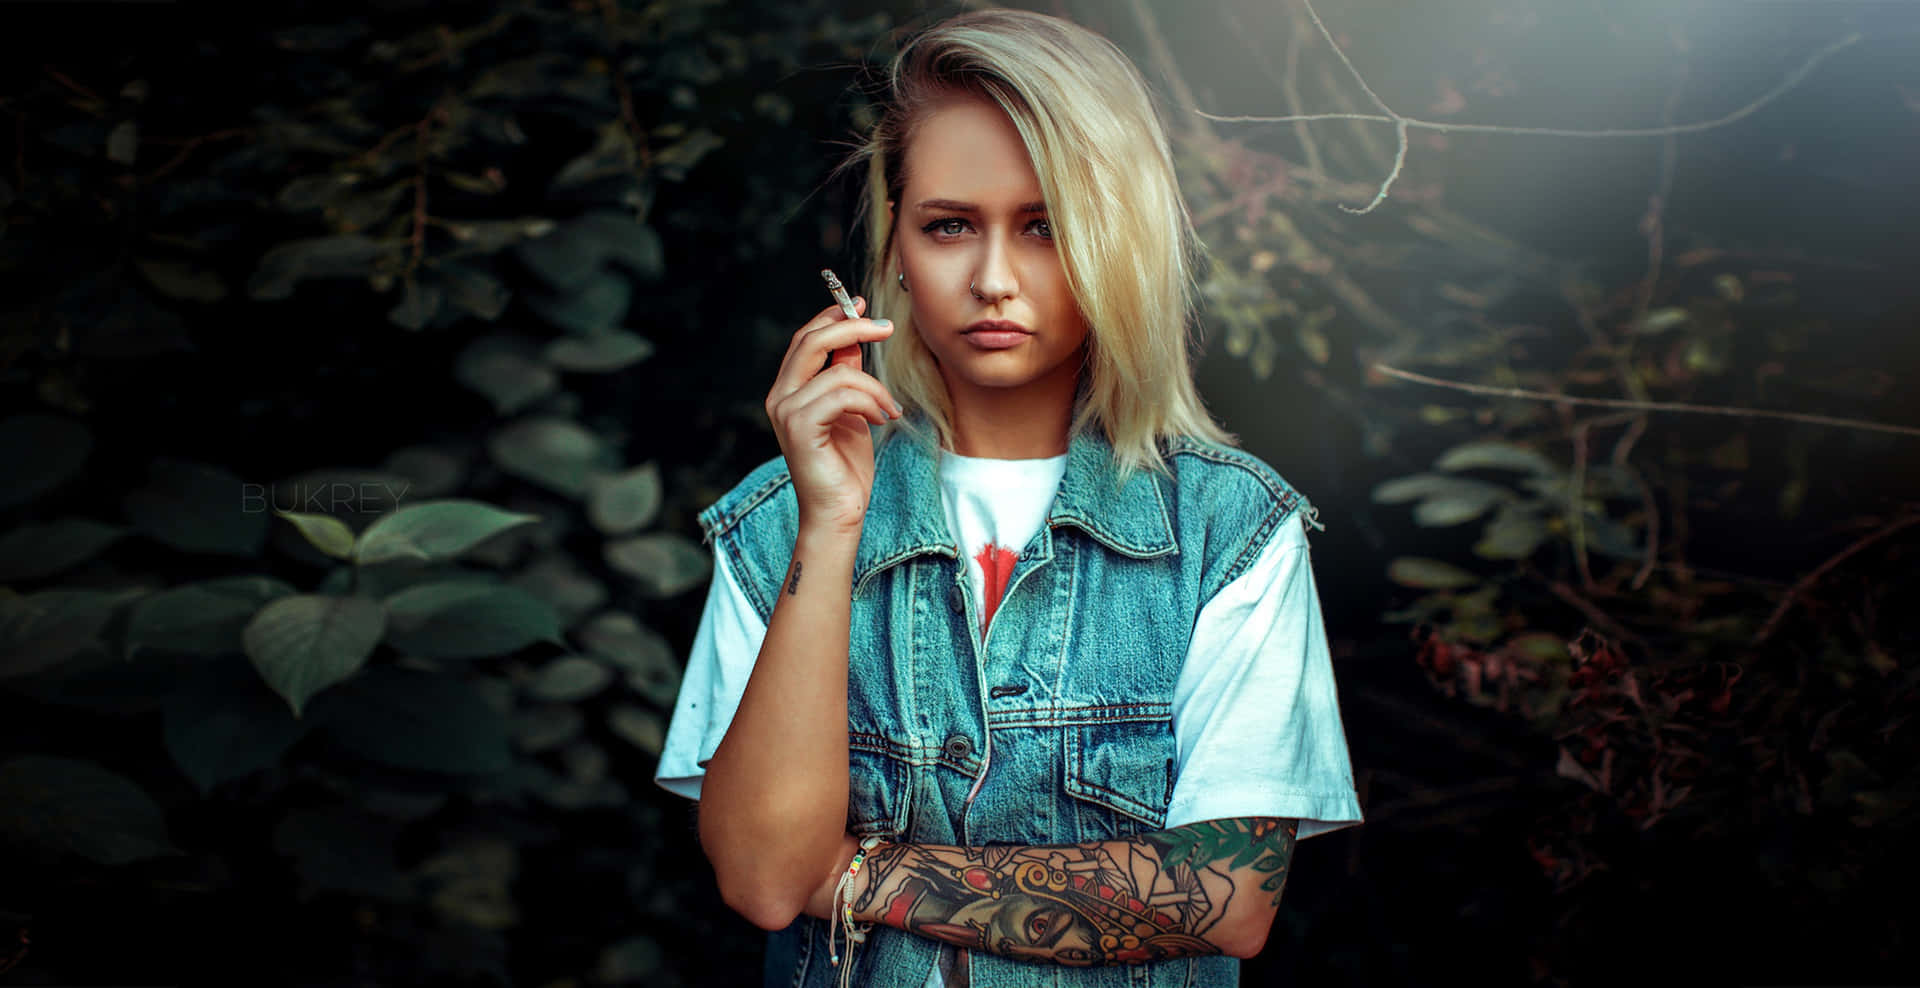 Tattooed Blonde Girl Smoking